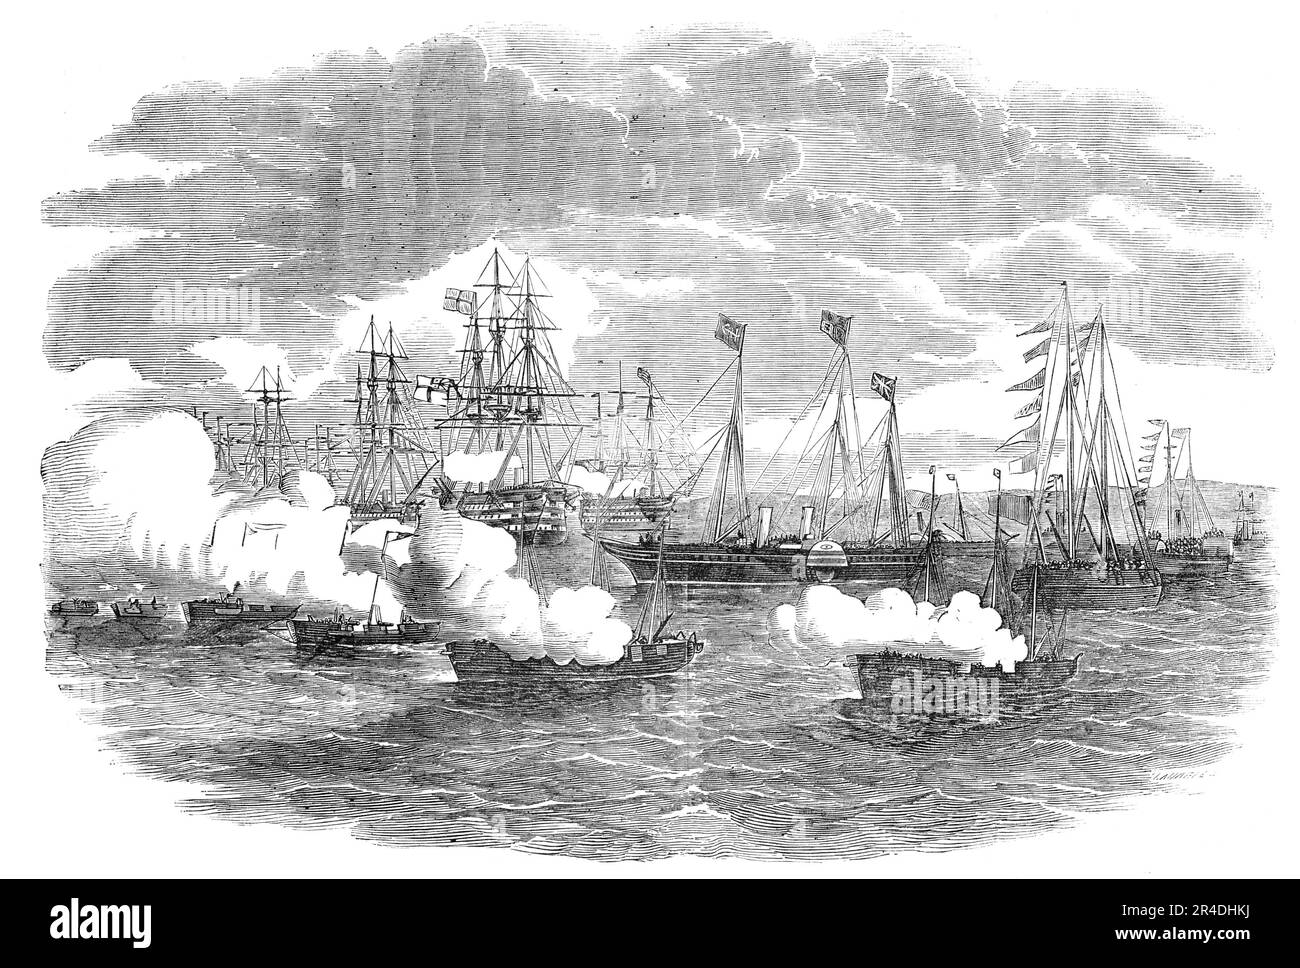 The Naval Review: Le signal de l'attaque de barque, 1856. Les navires de la Royal Navy participent à une simulation de bataille navale au large de la côte du Hampshire, près du château de Southsea. 'La flottille entière est fournie avec des chaudières de locomotive à haute pression - l'endroit nécessairement consacré à la machinerie rendant ce rapide absolument impératif, d'économiser la zone limitée à la disposition des ingénieurs. Pourtant, petite comme le cheval-puissance apparaît, la vitesse de la flotte de navires à canon n'est en aucun cas méprisable, la moyenne étant de sept à neuf noeuds. De "Illustrated London News", 1856. Banque D'Images